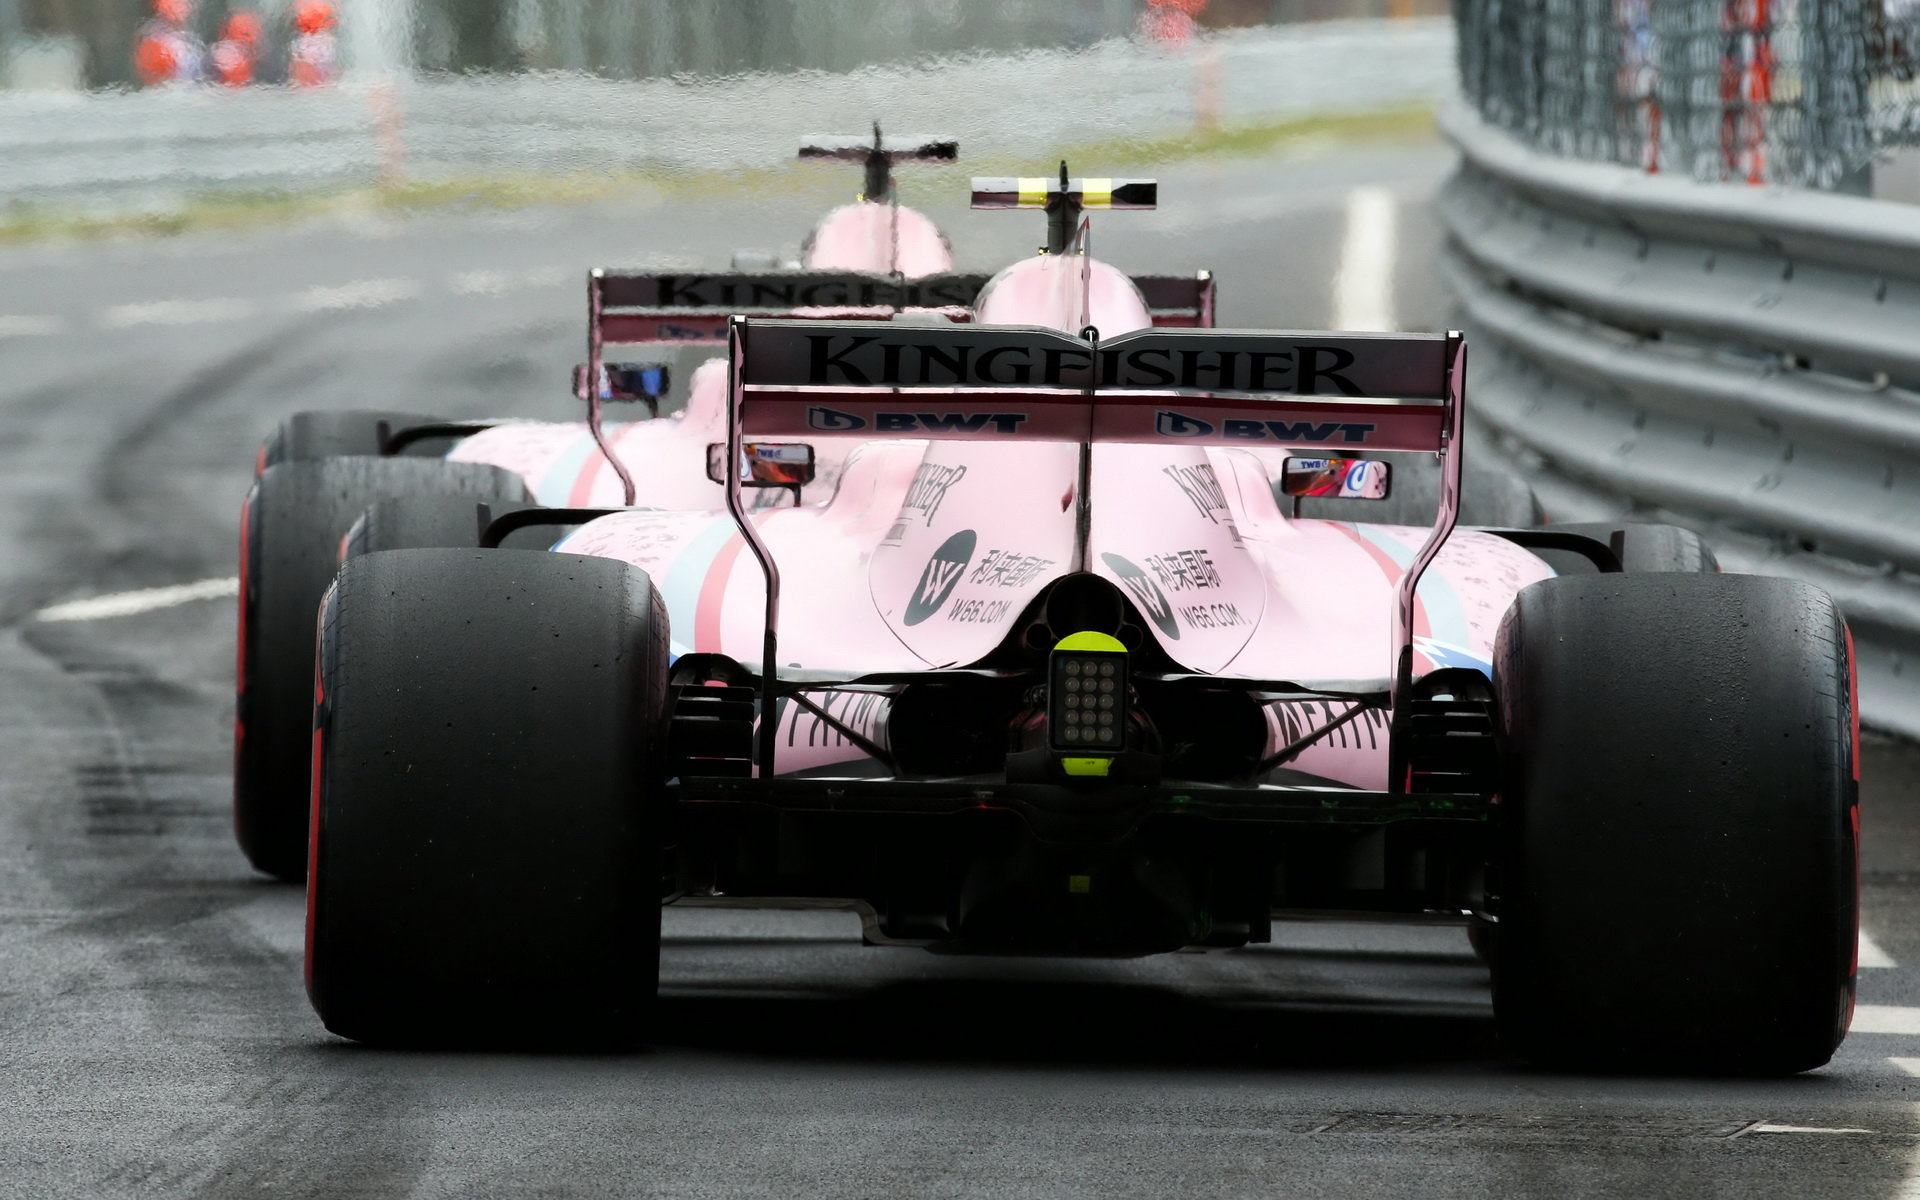 Force India funguje se svým omezeným rozpočtem velmi efektivně, mezi konstruktéry je čtvrtá